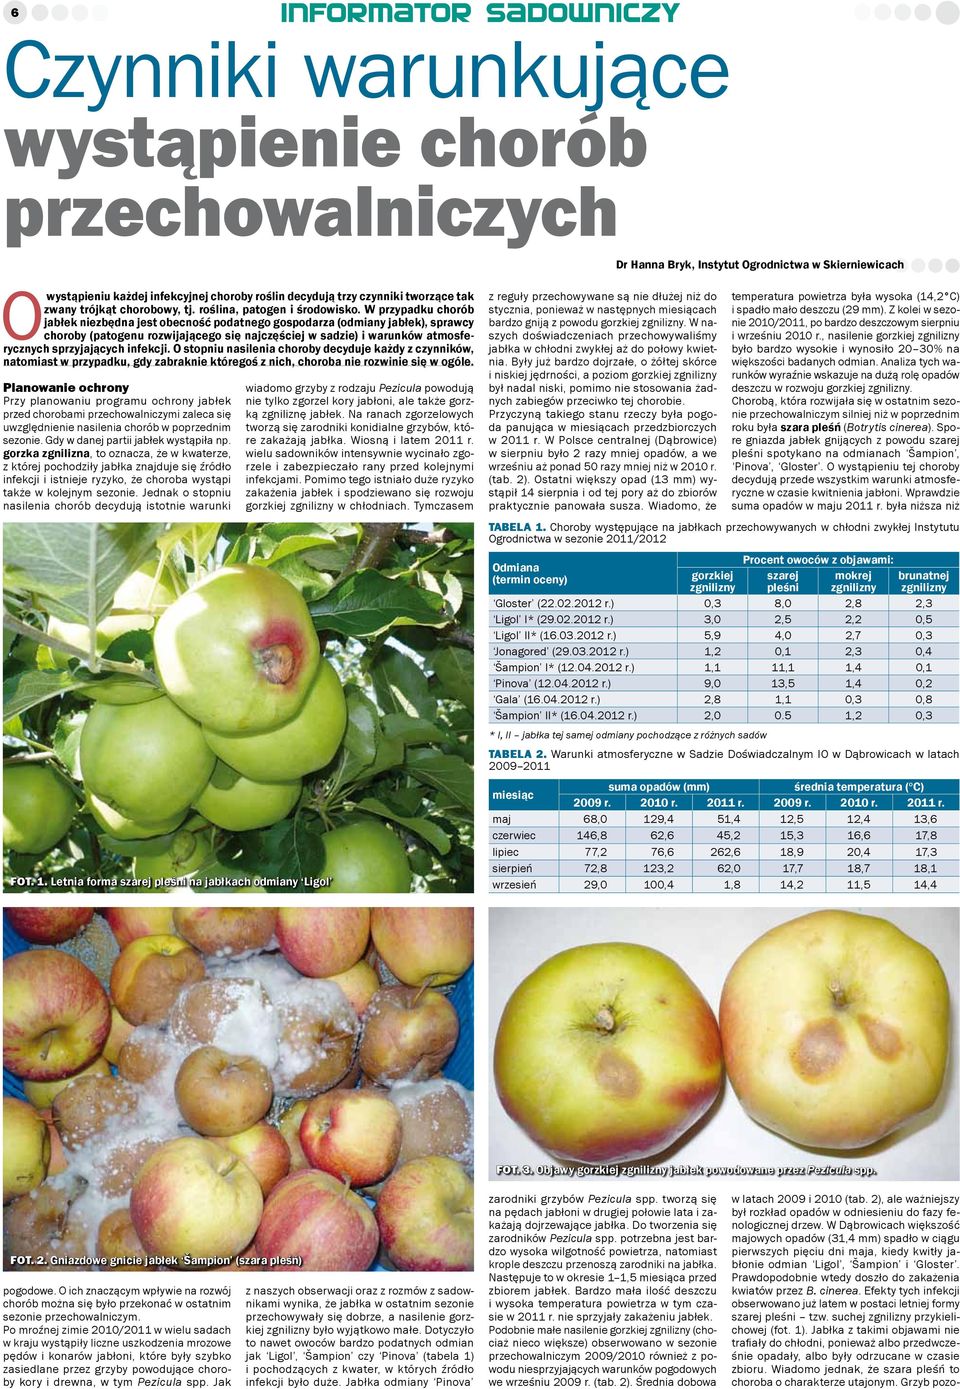 W przypadku chorób jabłek niezbędna jest obecność podatnego gospodarza (odmiany jabłek), sprawcy choroby (patogenu rozwijającego się najczęściej w sadzie) i warunków atmosferycznych sprzyjających